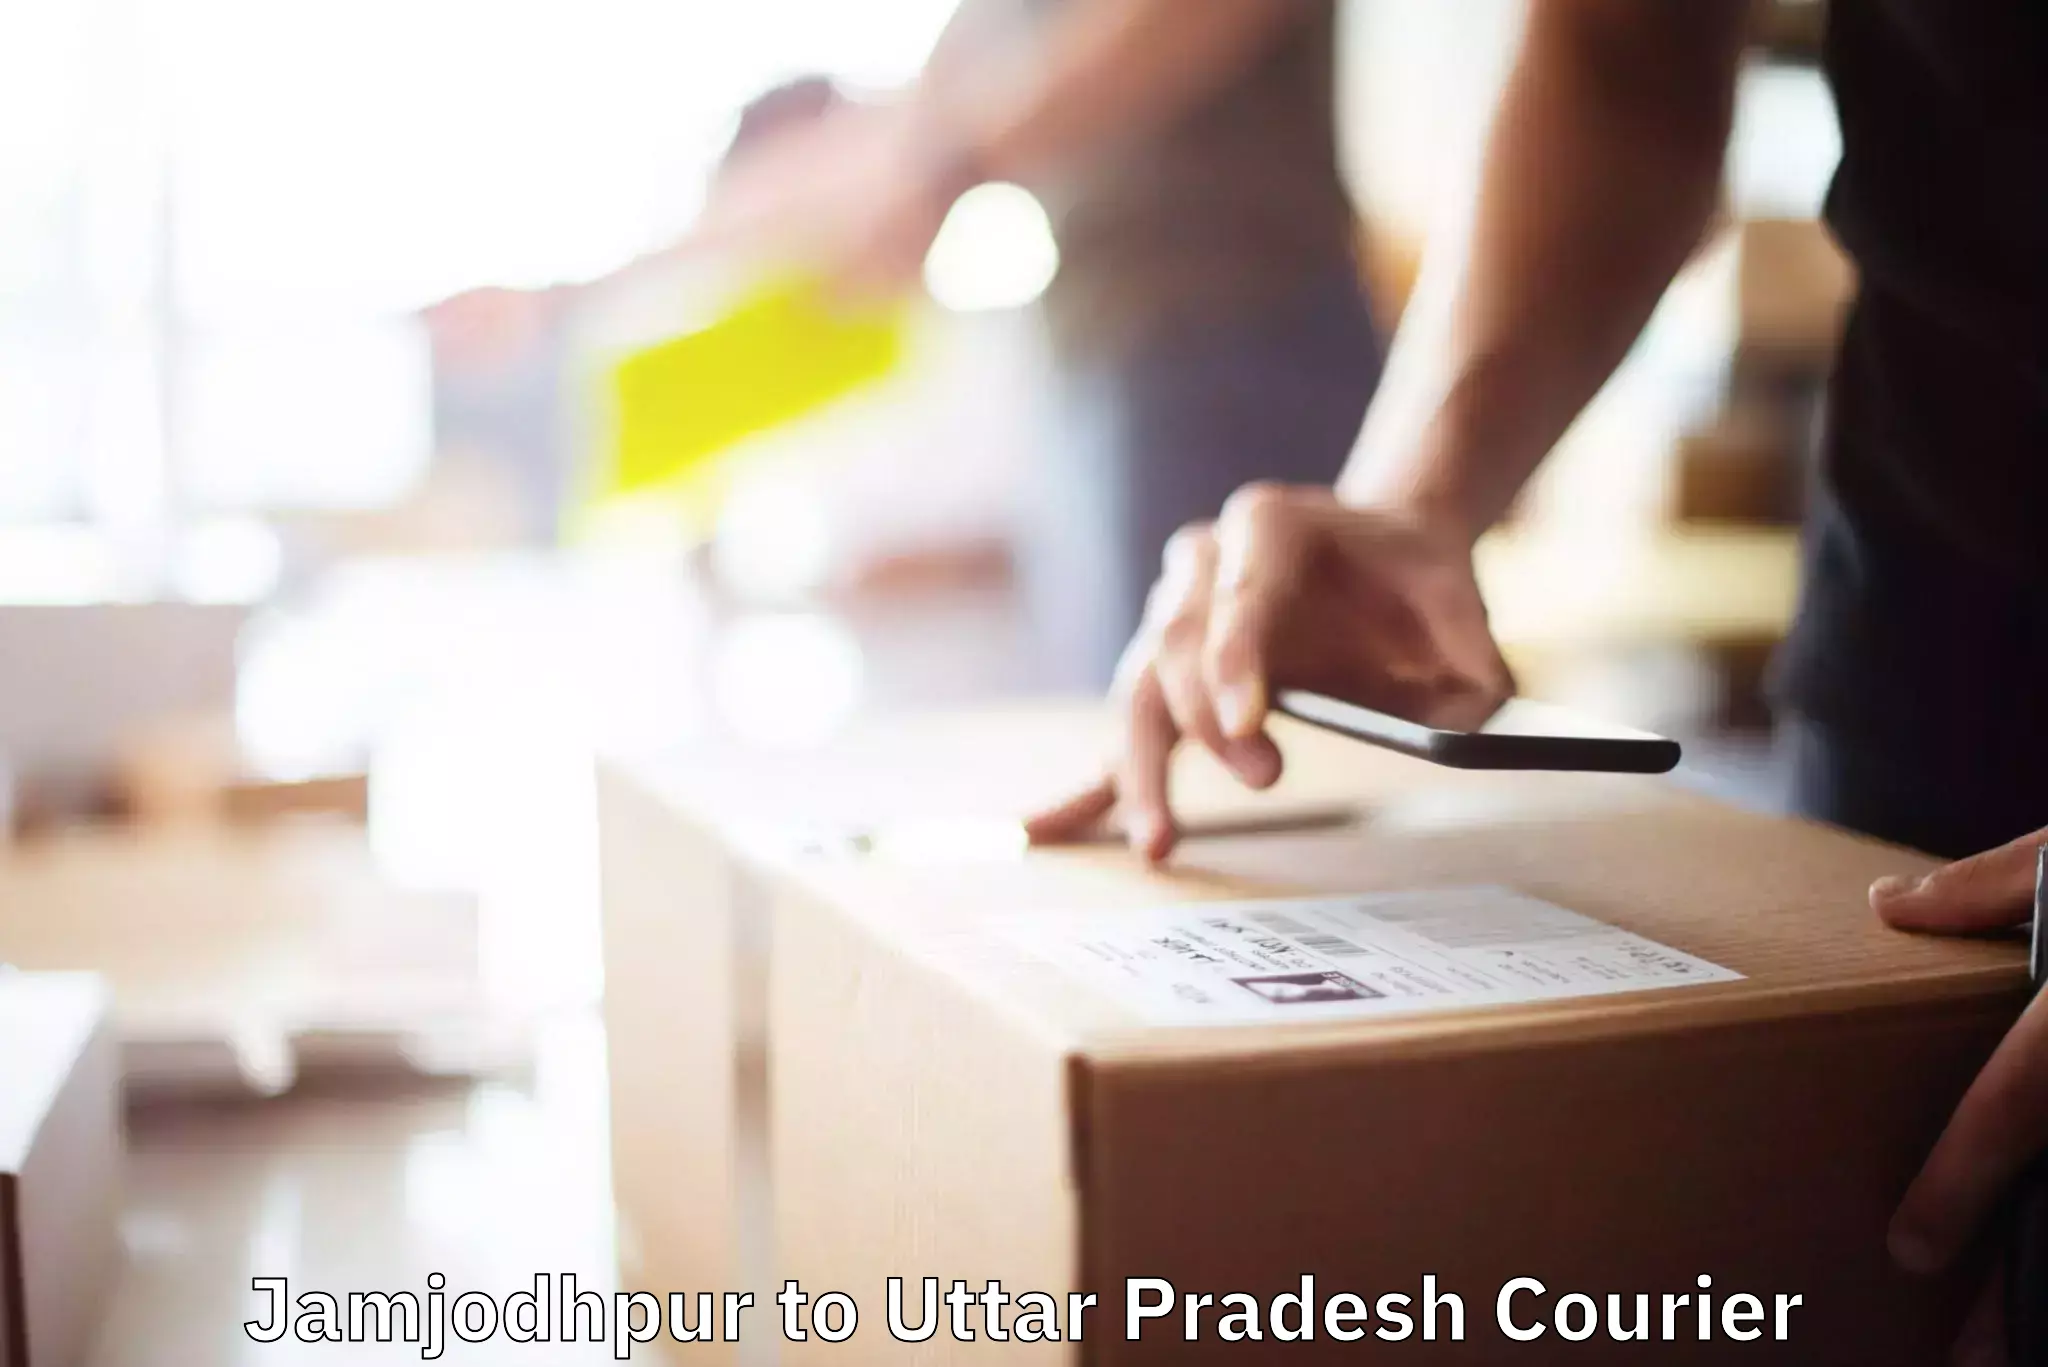 Household goods movers and packers Jamjodhpur to Uttar Pradesh